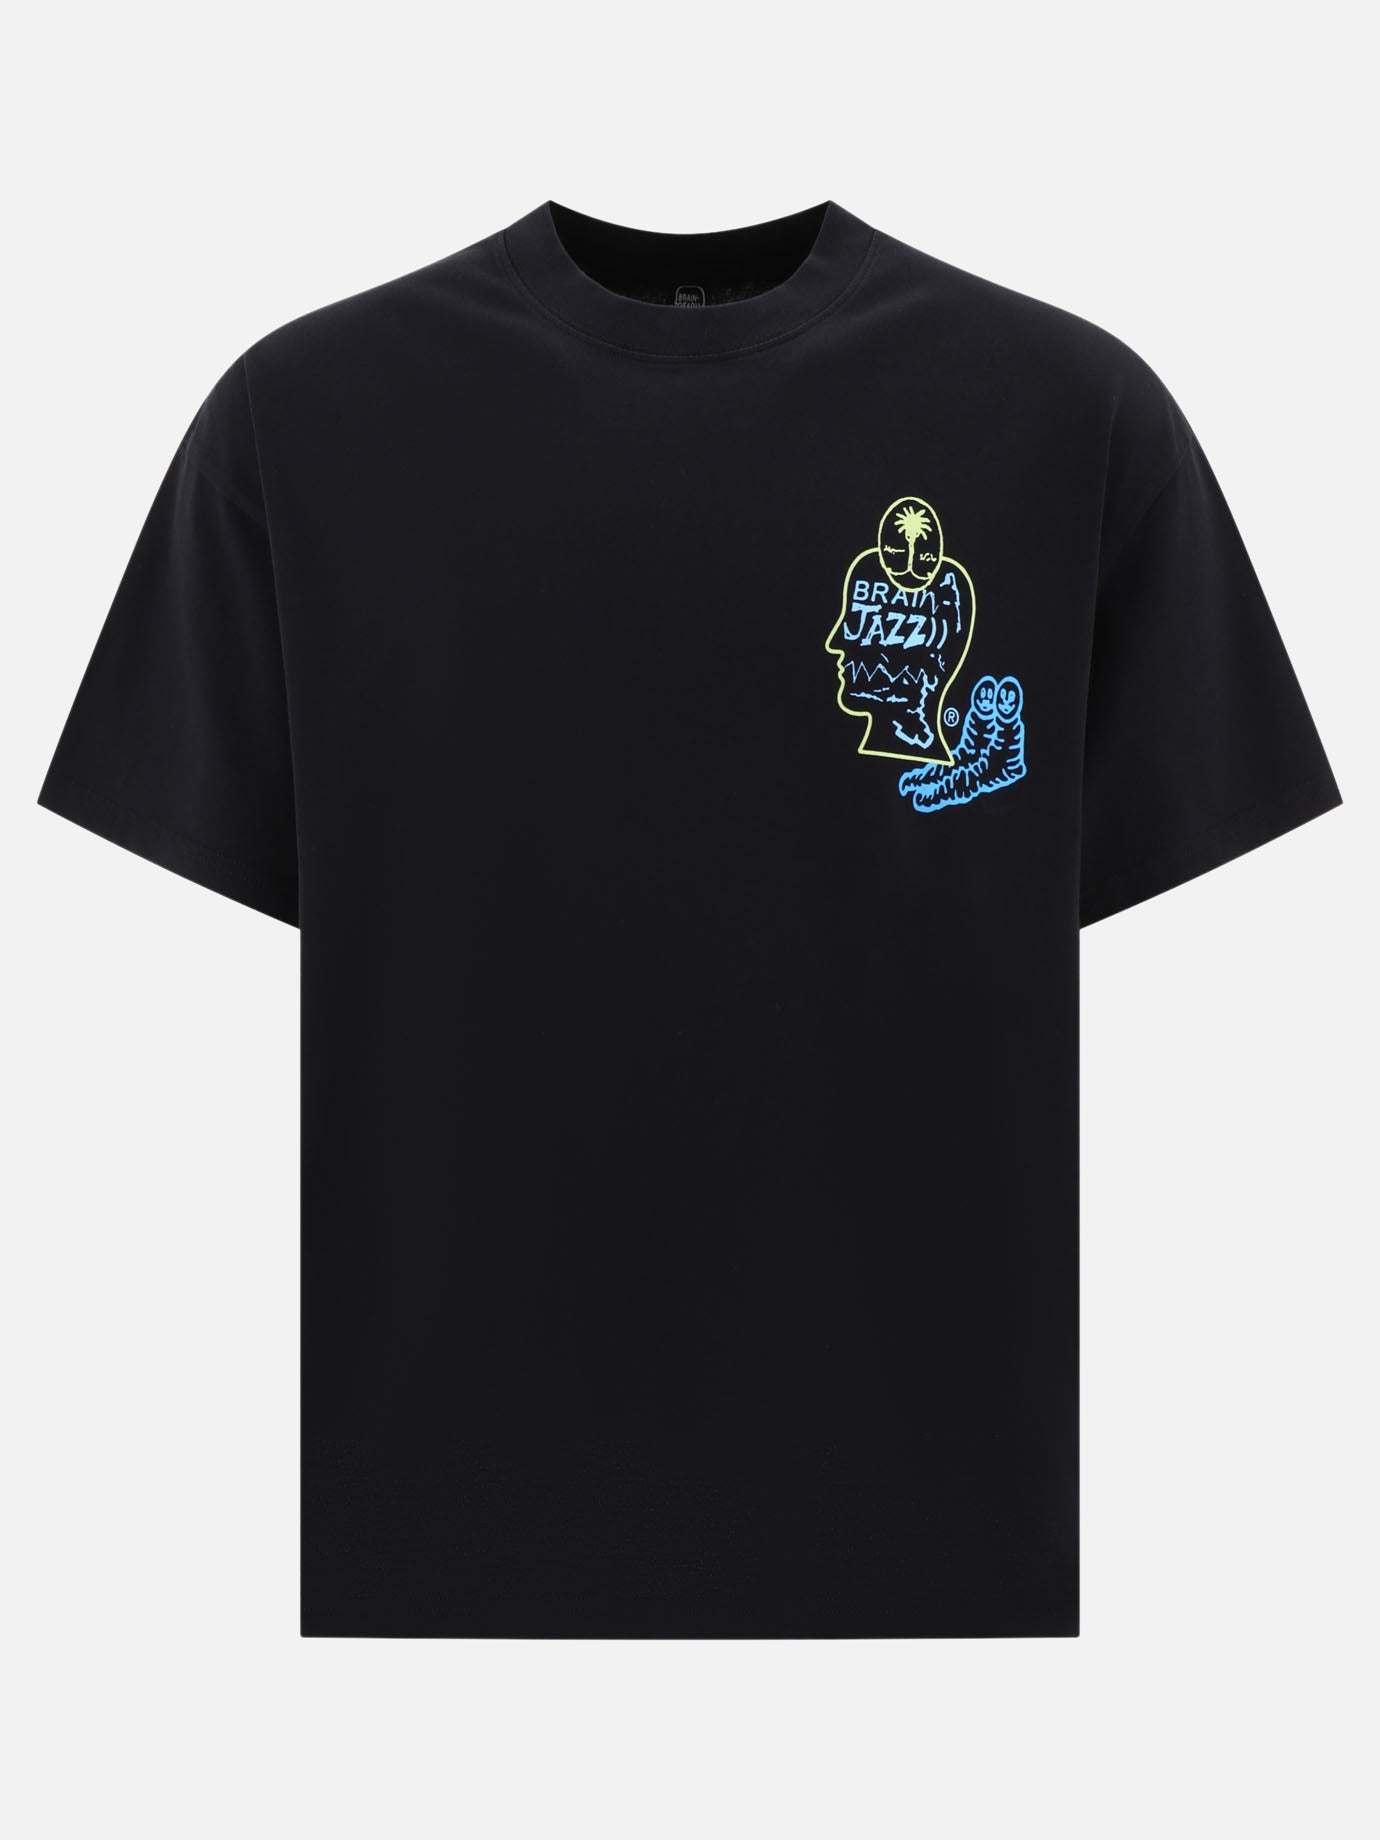 "Brain Jazz" t-shirt